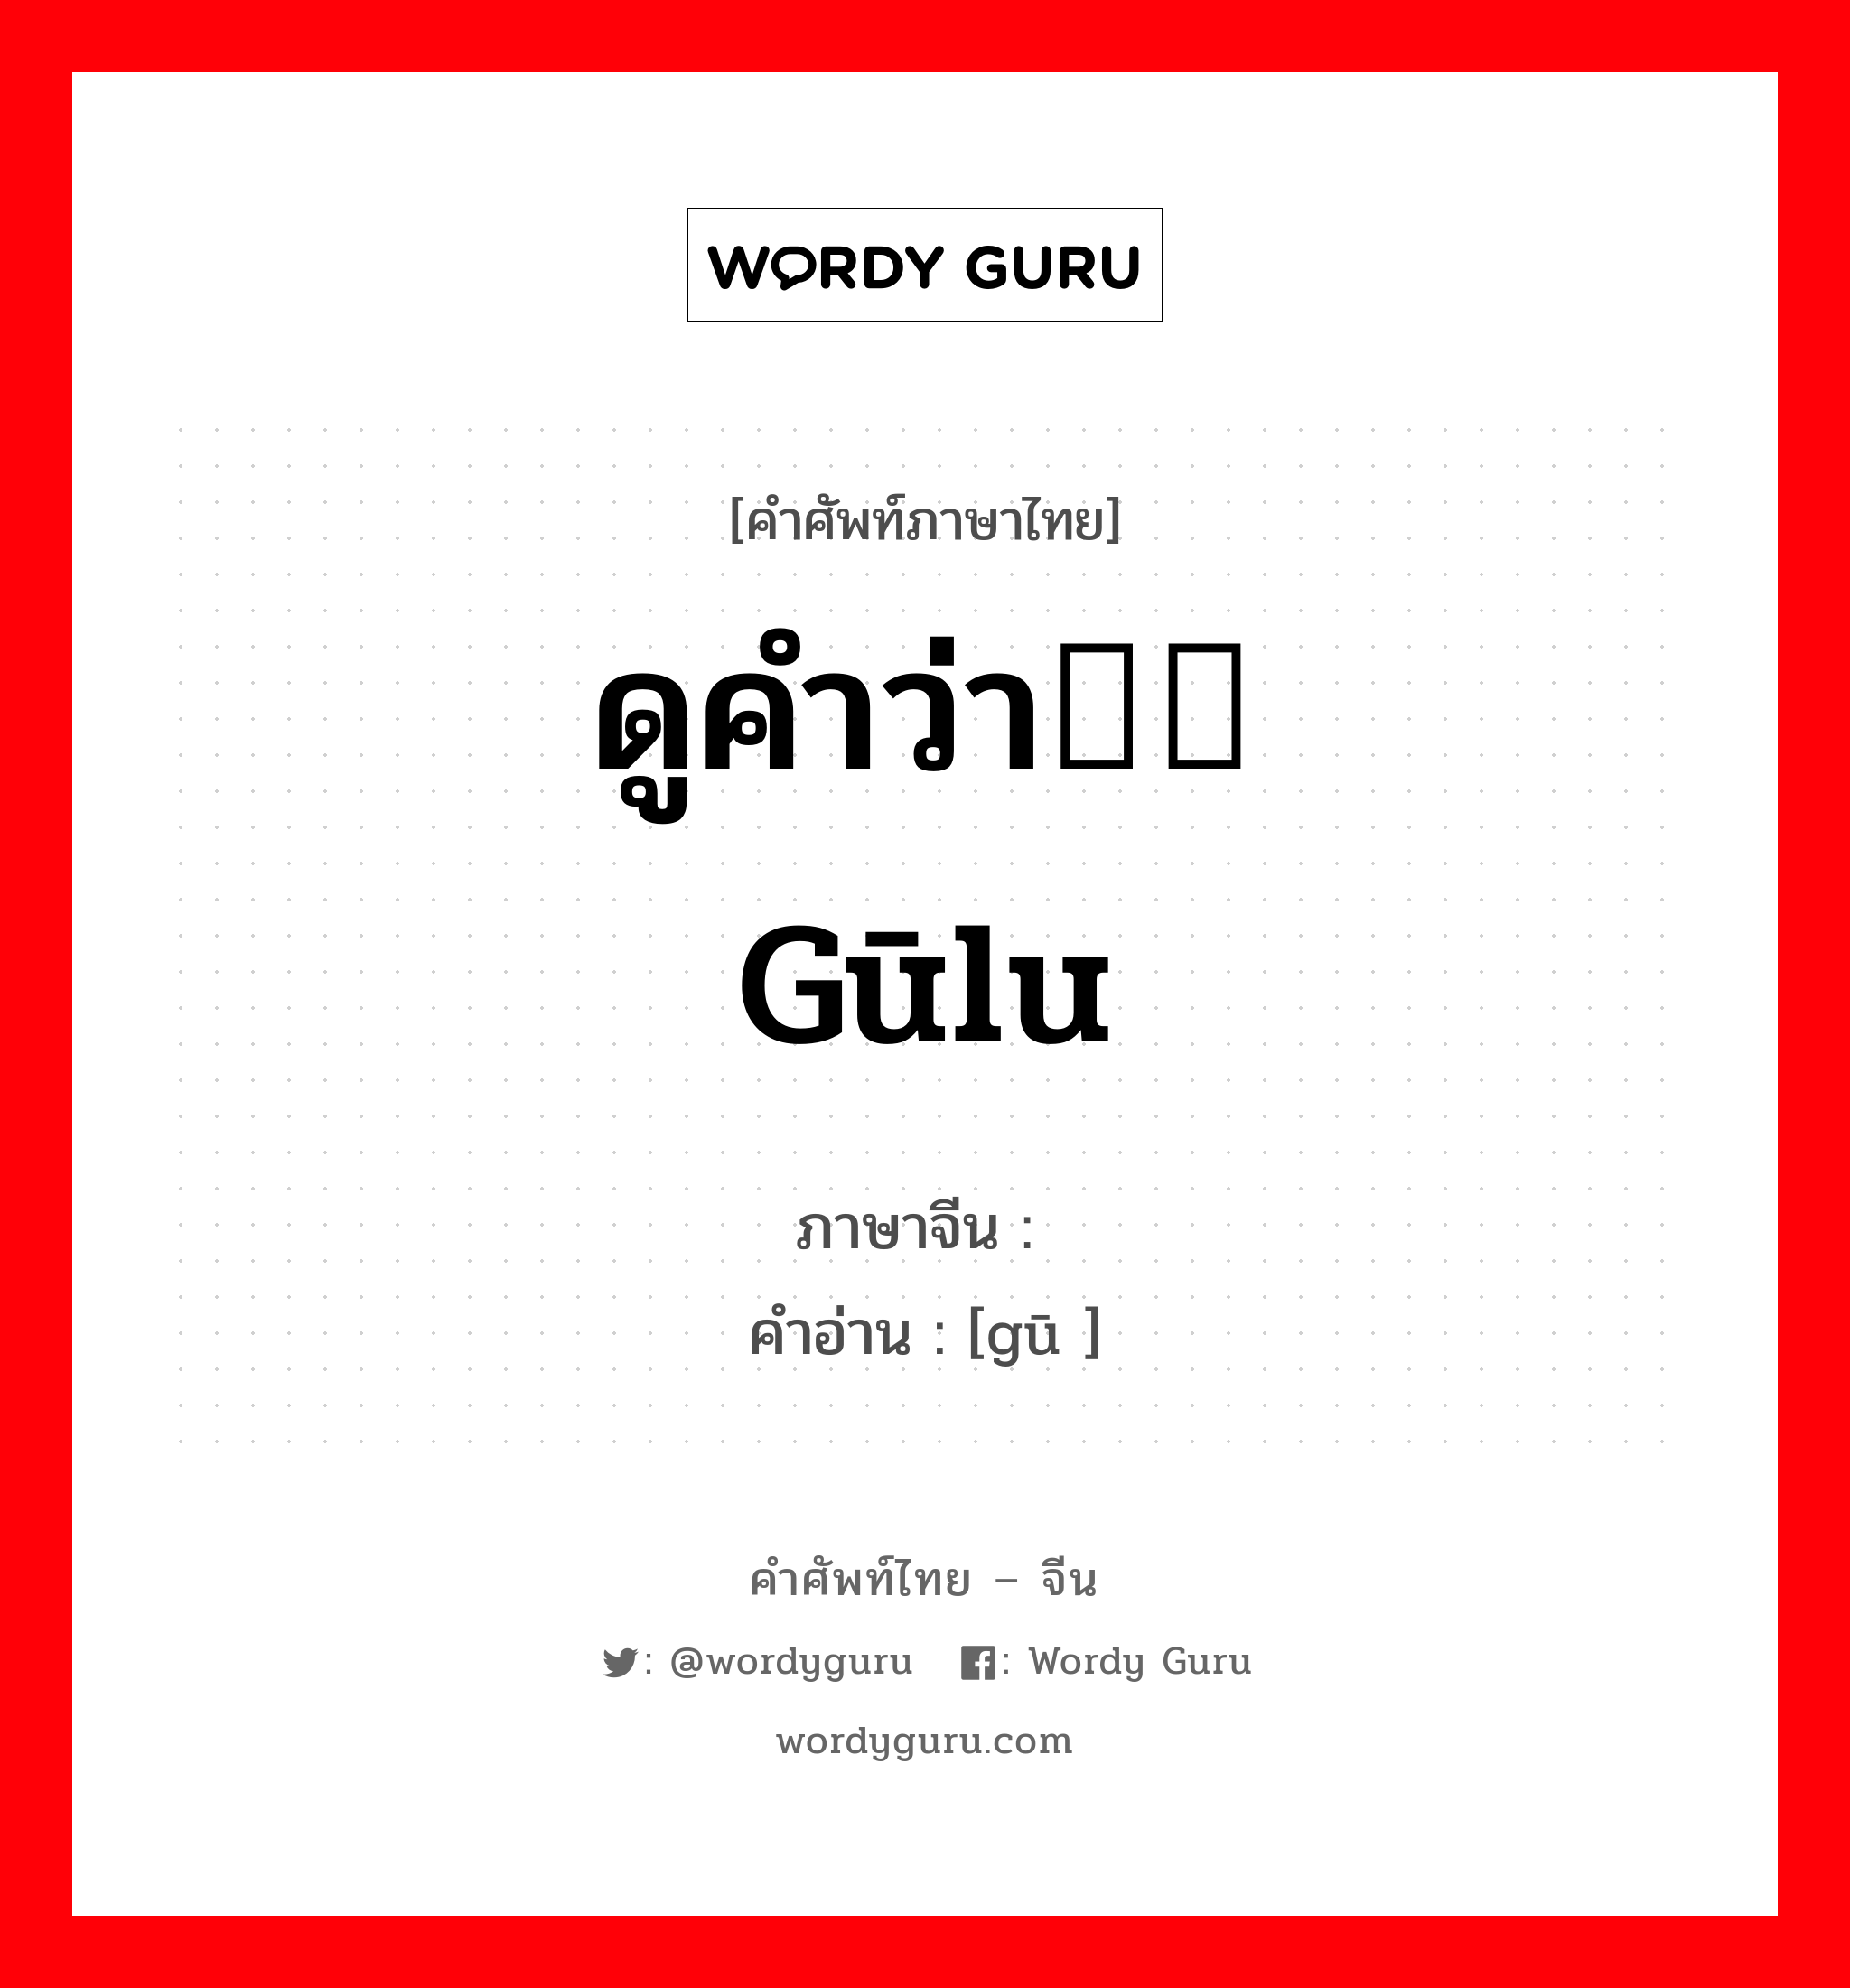 ดูคำว่า轱轳 gūlu ภาษาจีนคืออะไร, คำศัพท์ภาษาไทย - จีน ดูคำว่า轱轳 gūlu ภาษาจีน 轱 คำอ่าน [gū ]